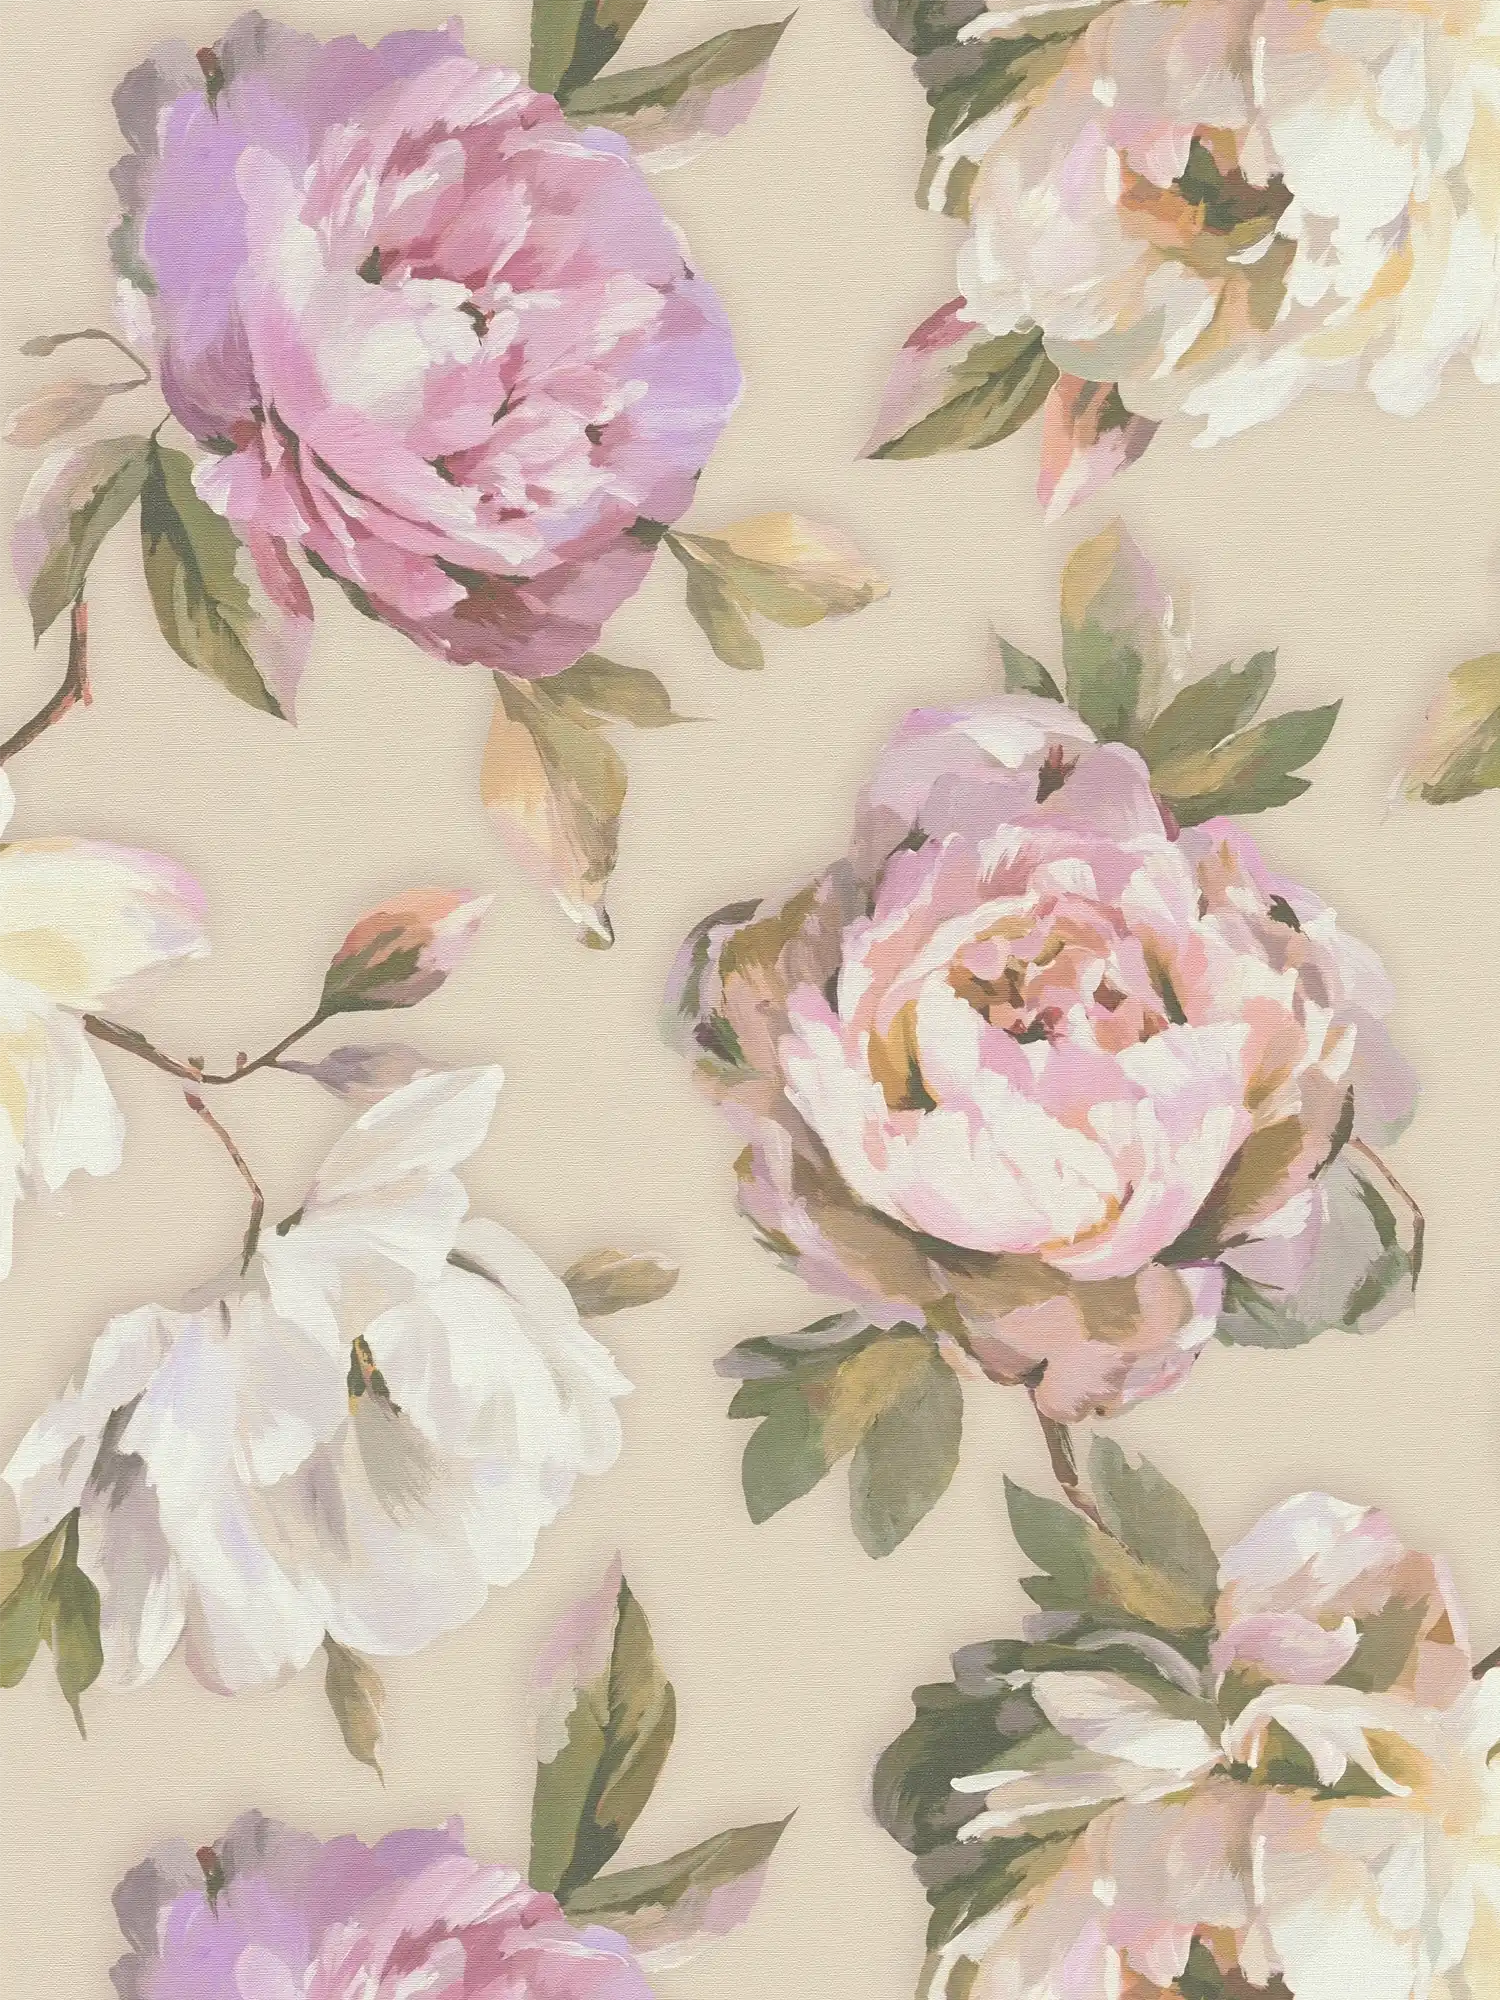 papier peint en papier intissé avec des fleurs de roses pittoresques dans un look aquarelle - violet, rose, vert
